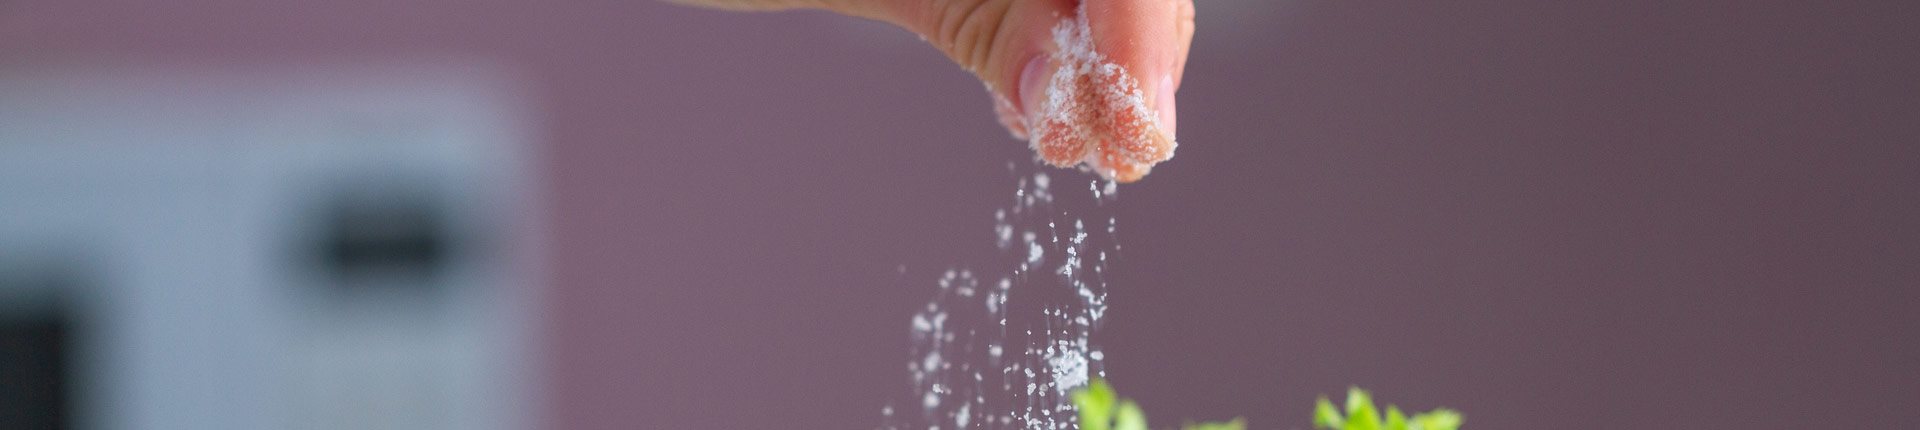 Nadmiar soli w diecie i jego skutki uboczne 